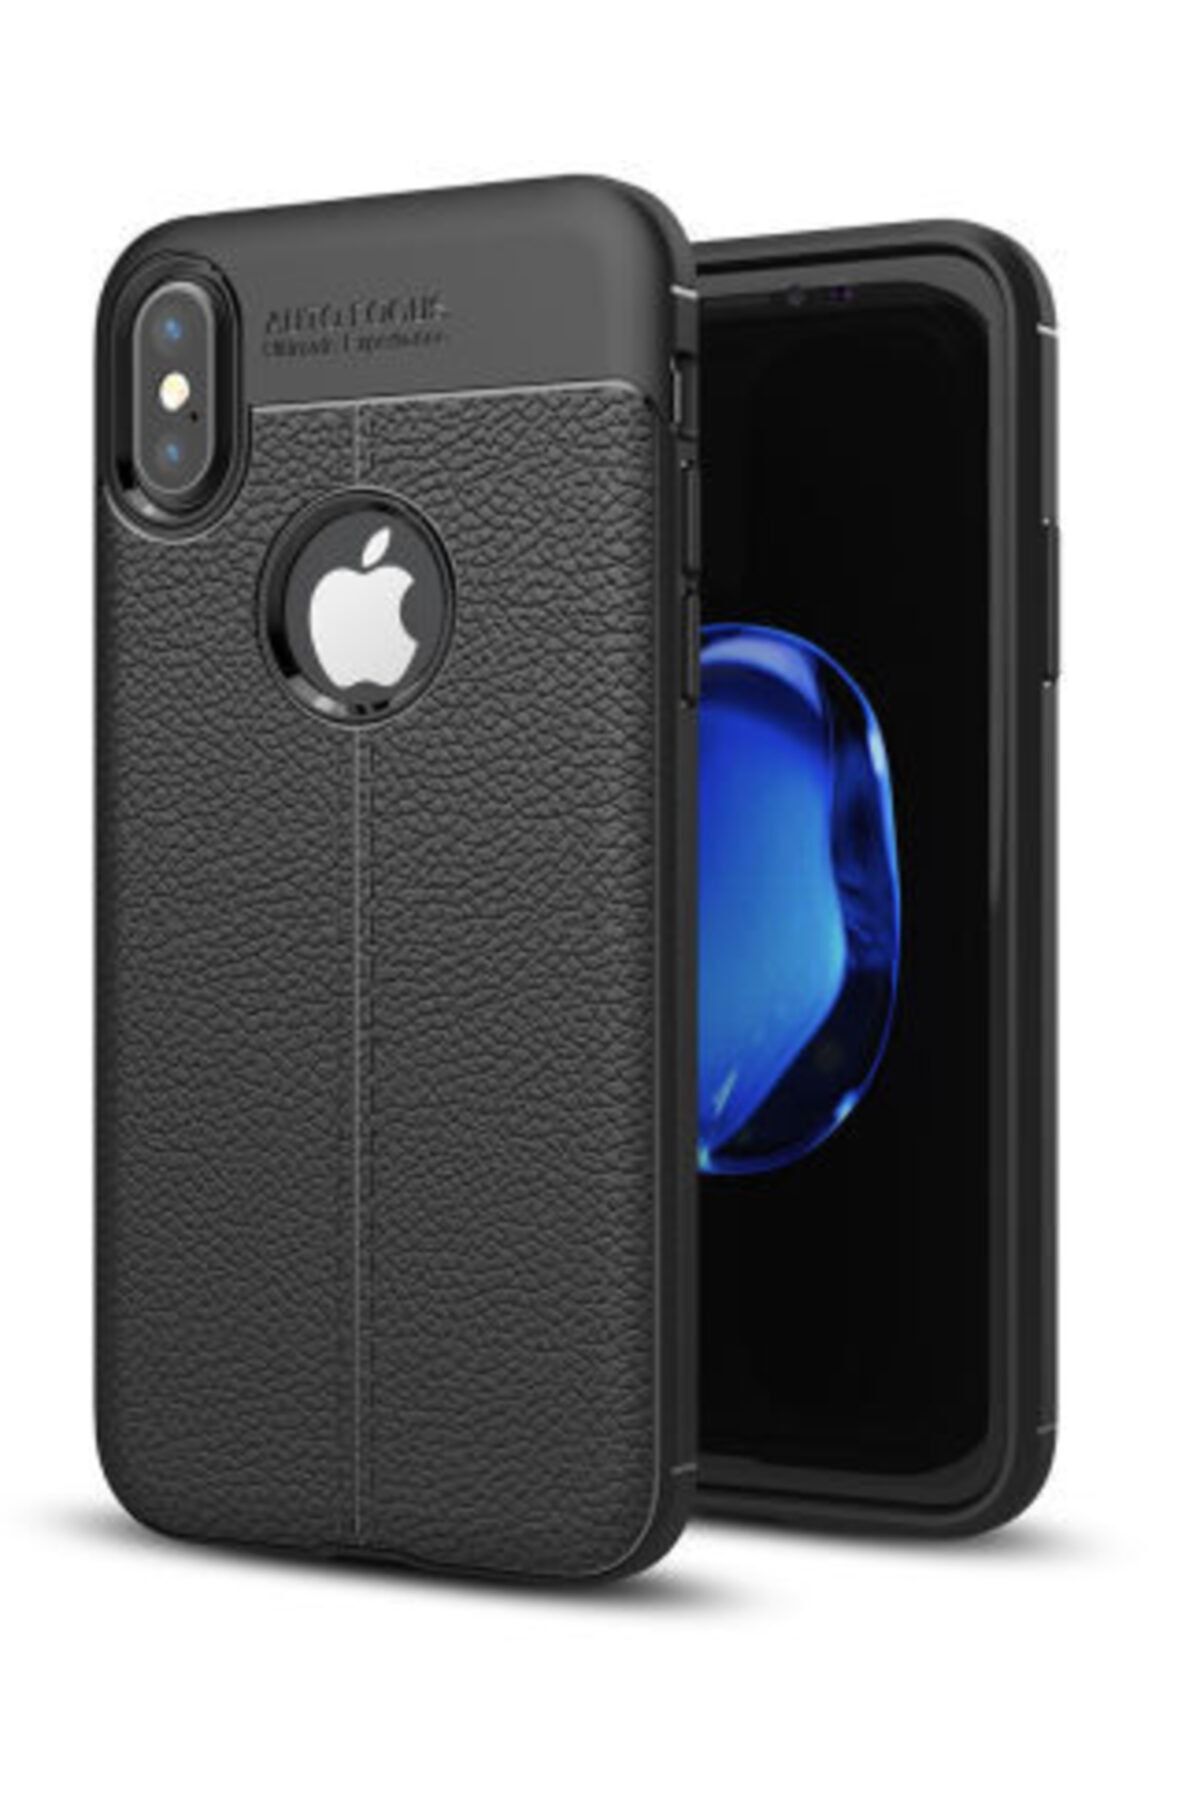 Pickcase Apple Iphone X Kılıf Niss Silikon